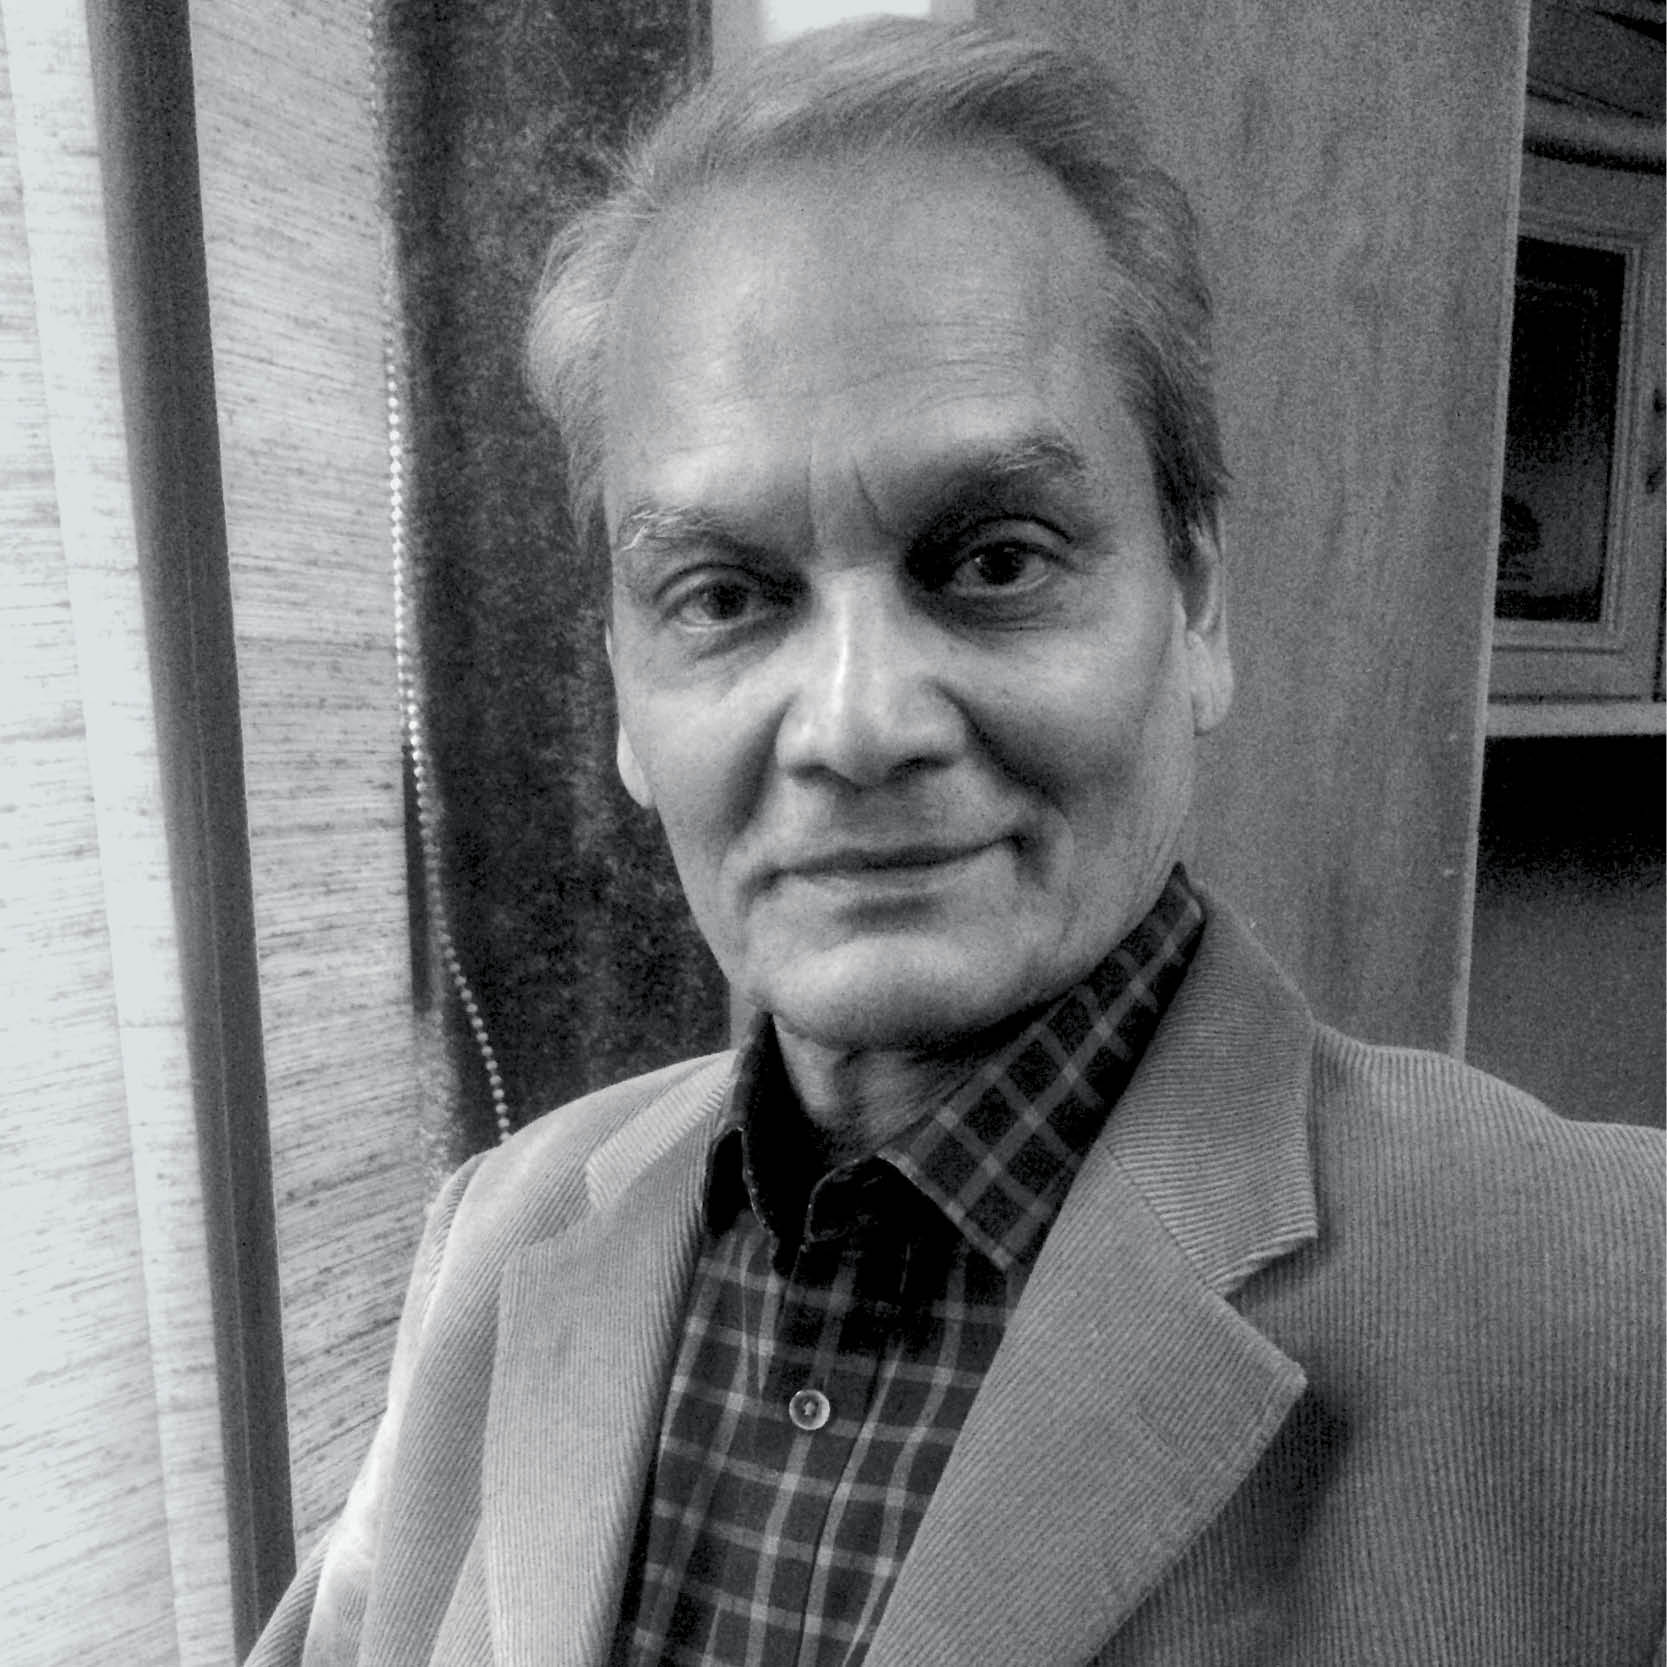 Author Vinod Pande